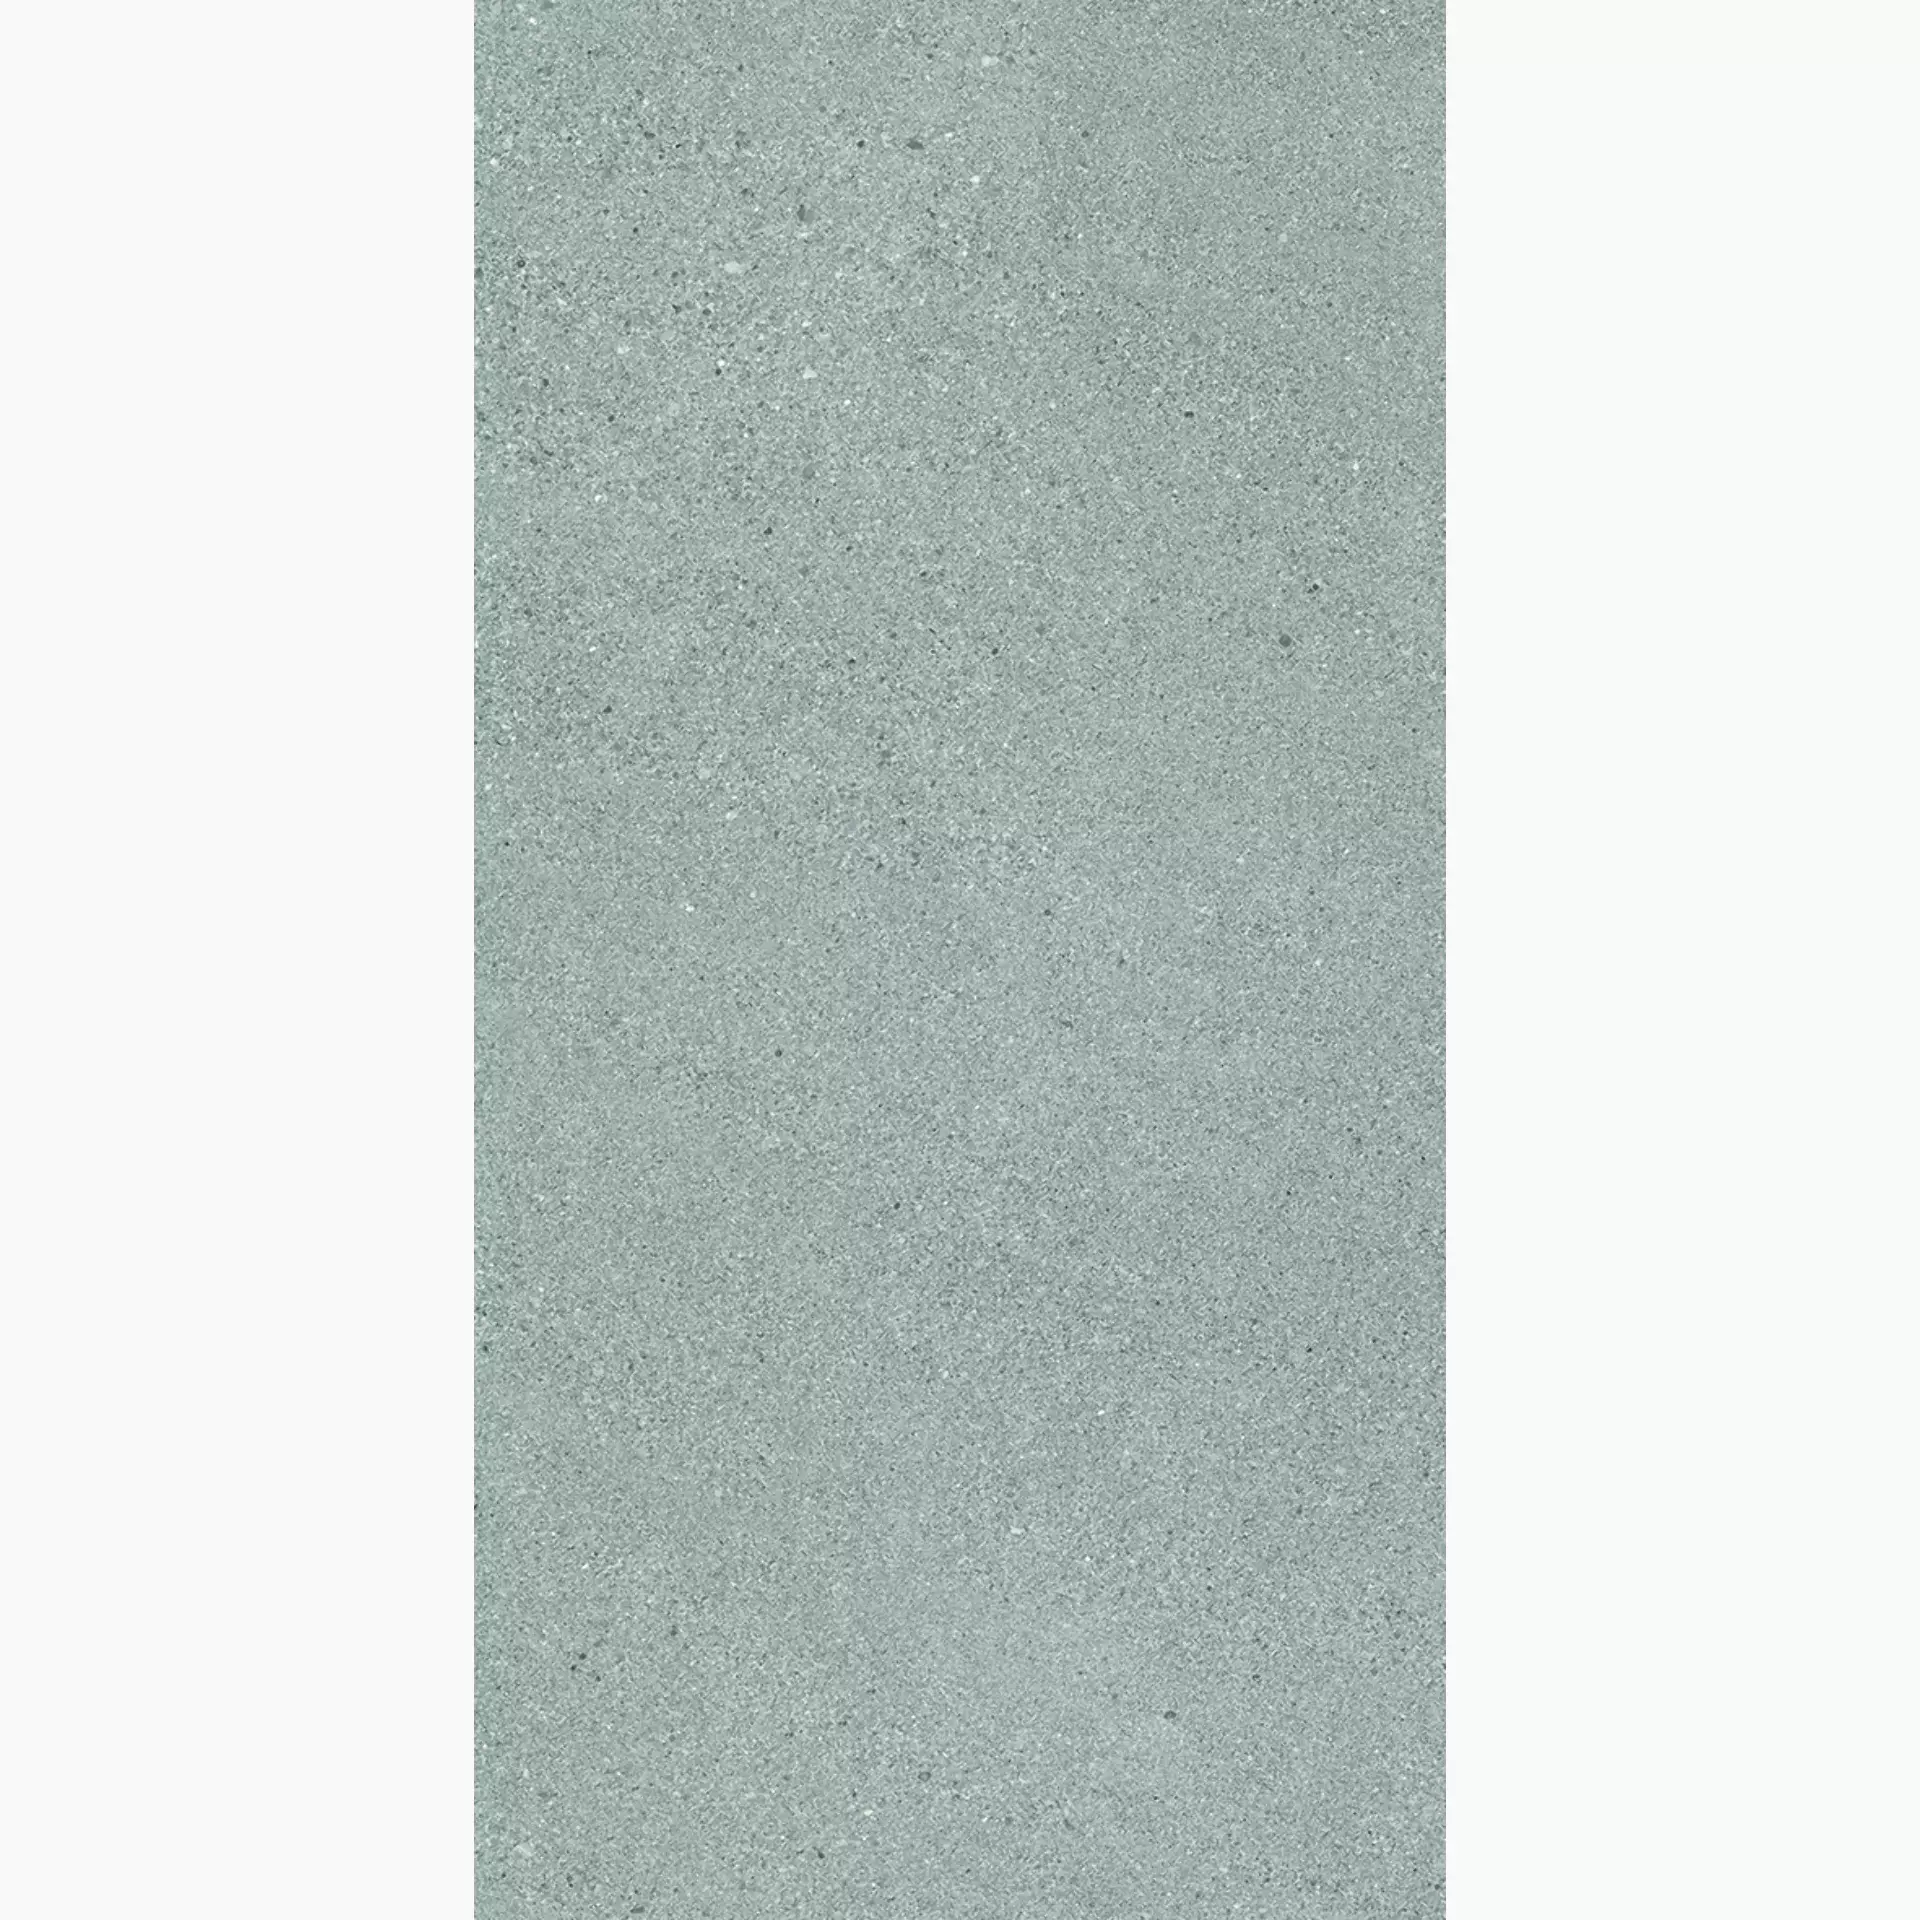 Ergon Grain Stone Fine Grain Grey Naturale E09A 60x120cm rectified 9,5mm